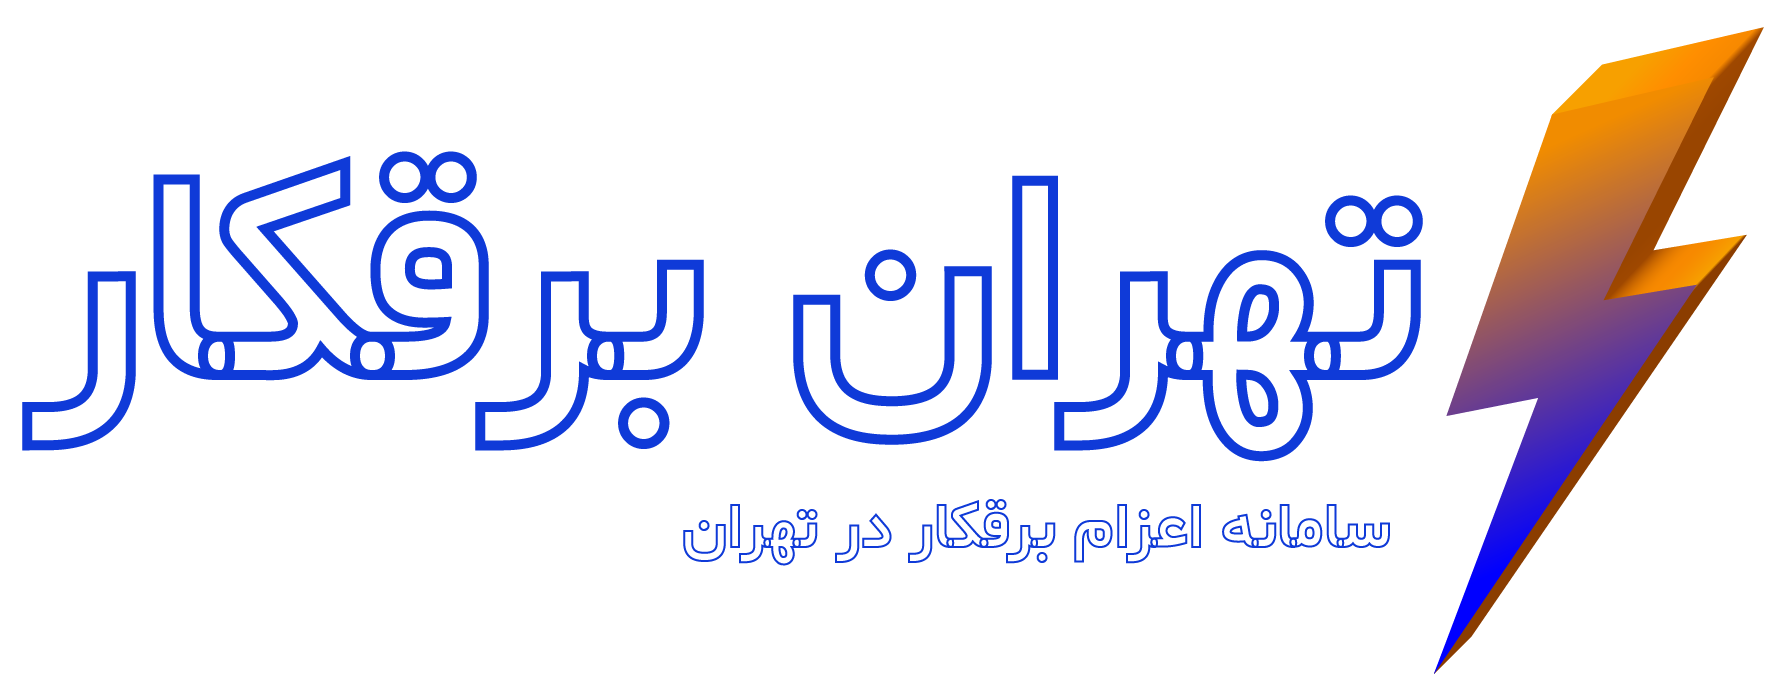 logo-tehran -baghkar-01